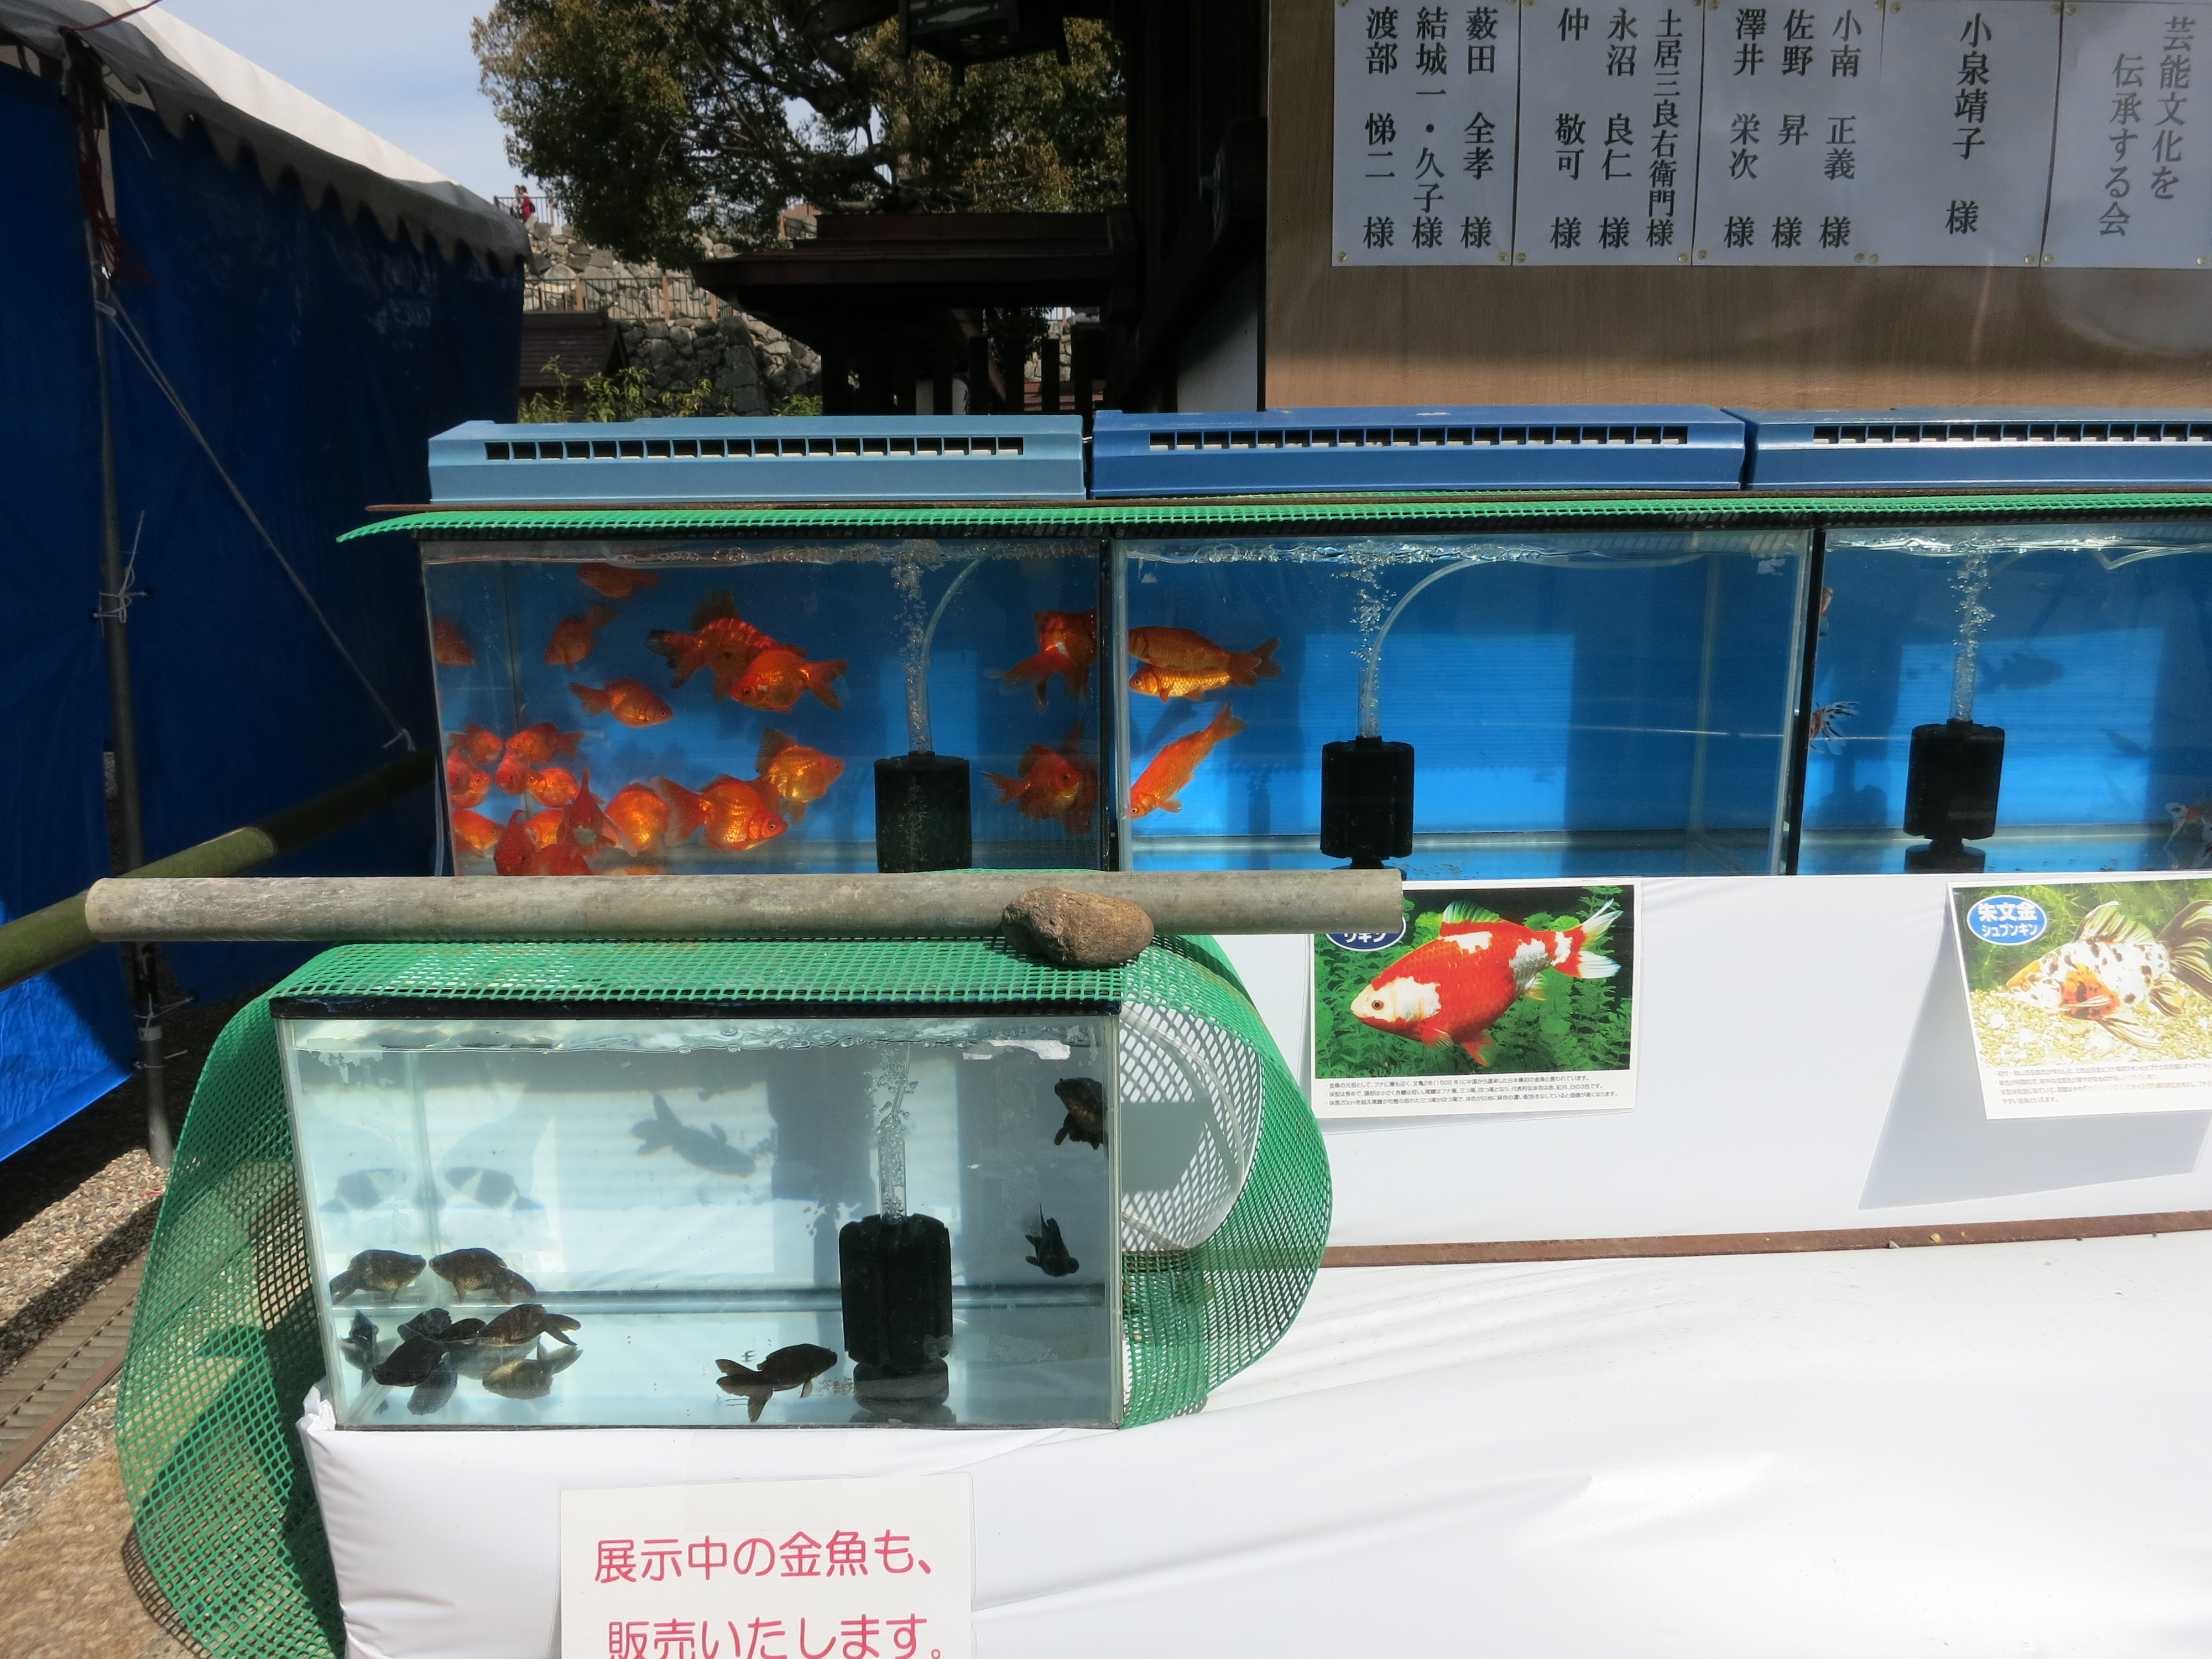 鳥居をくぐり柳澤神社の前まで来ると、金魚の水槽を発見。大和郡山らしいですね。